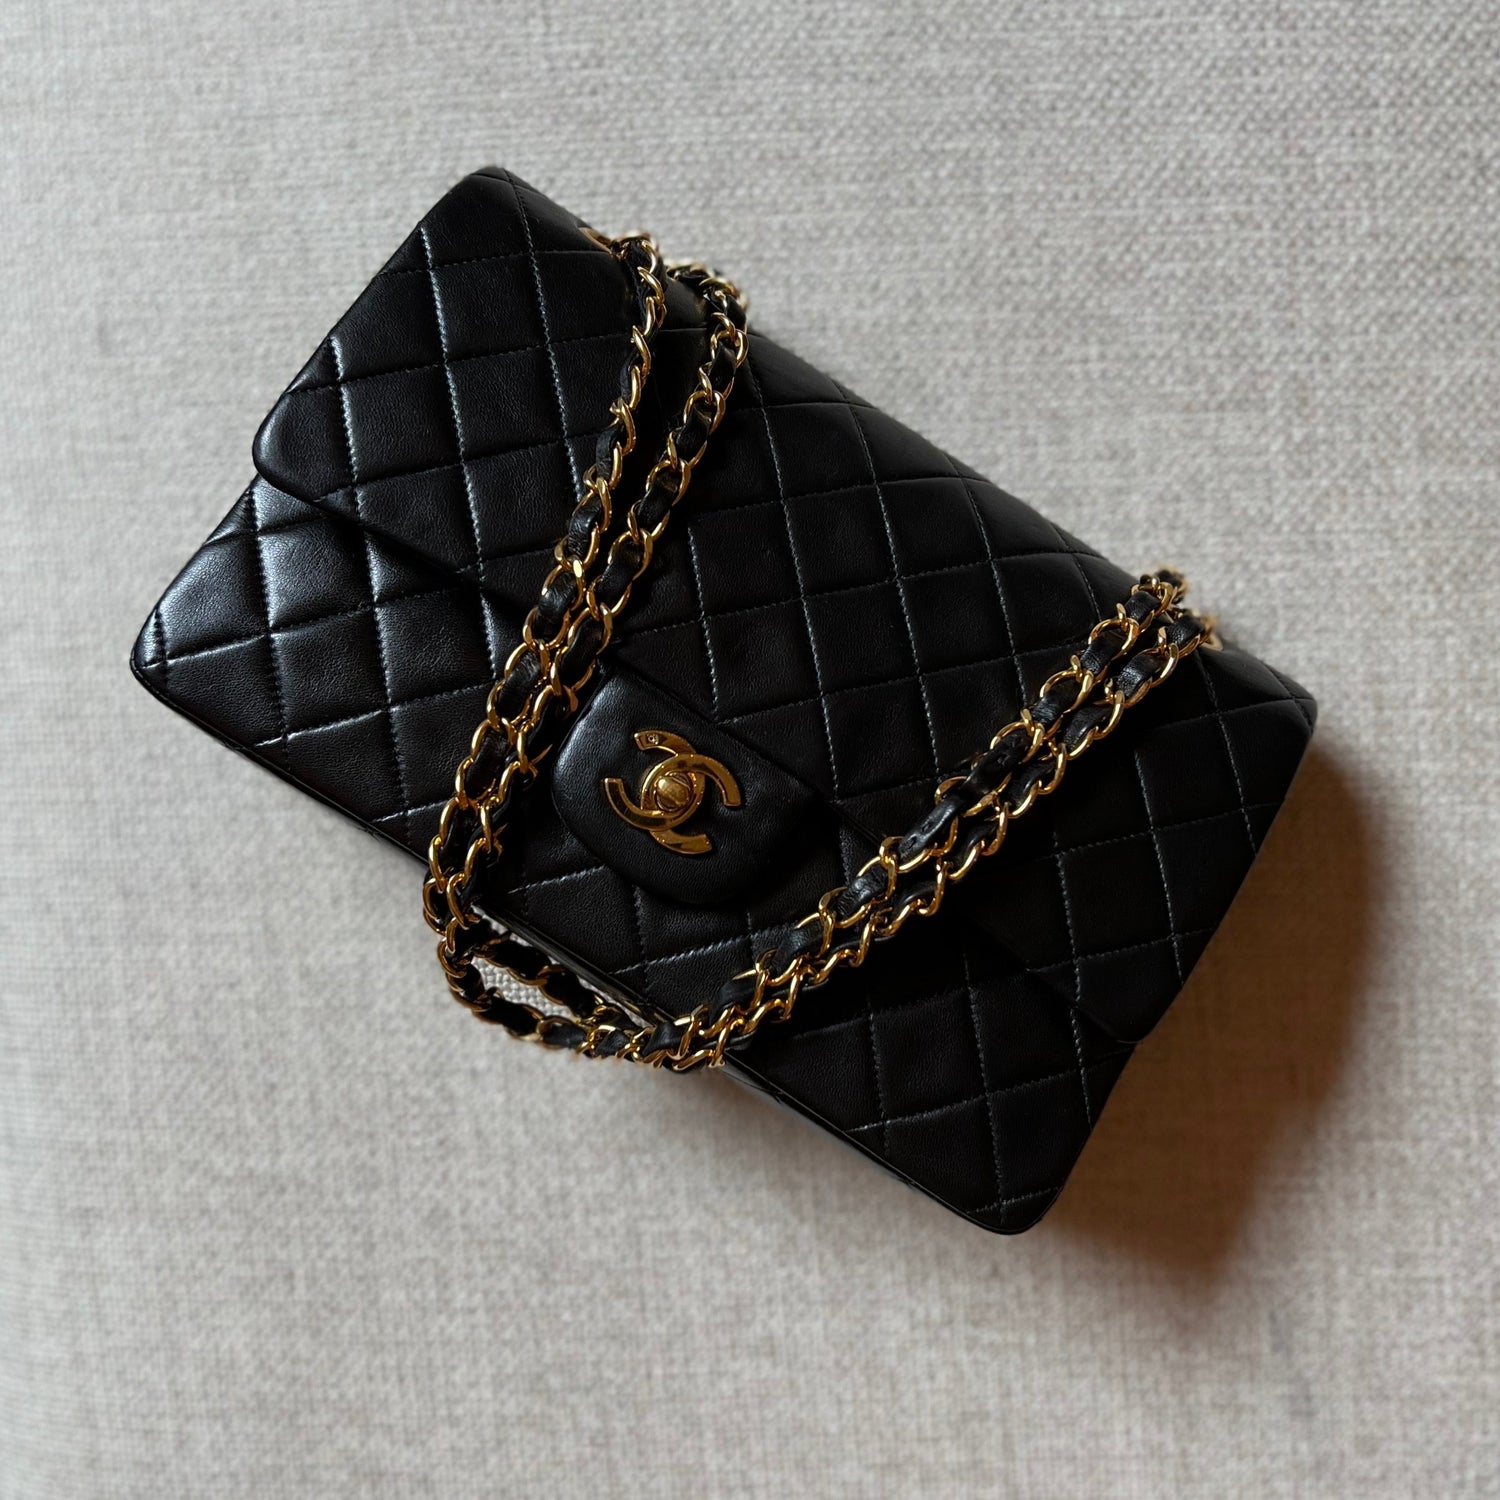 Vintage Chanel classic double Flap medium black